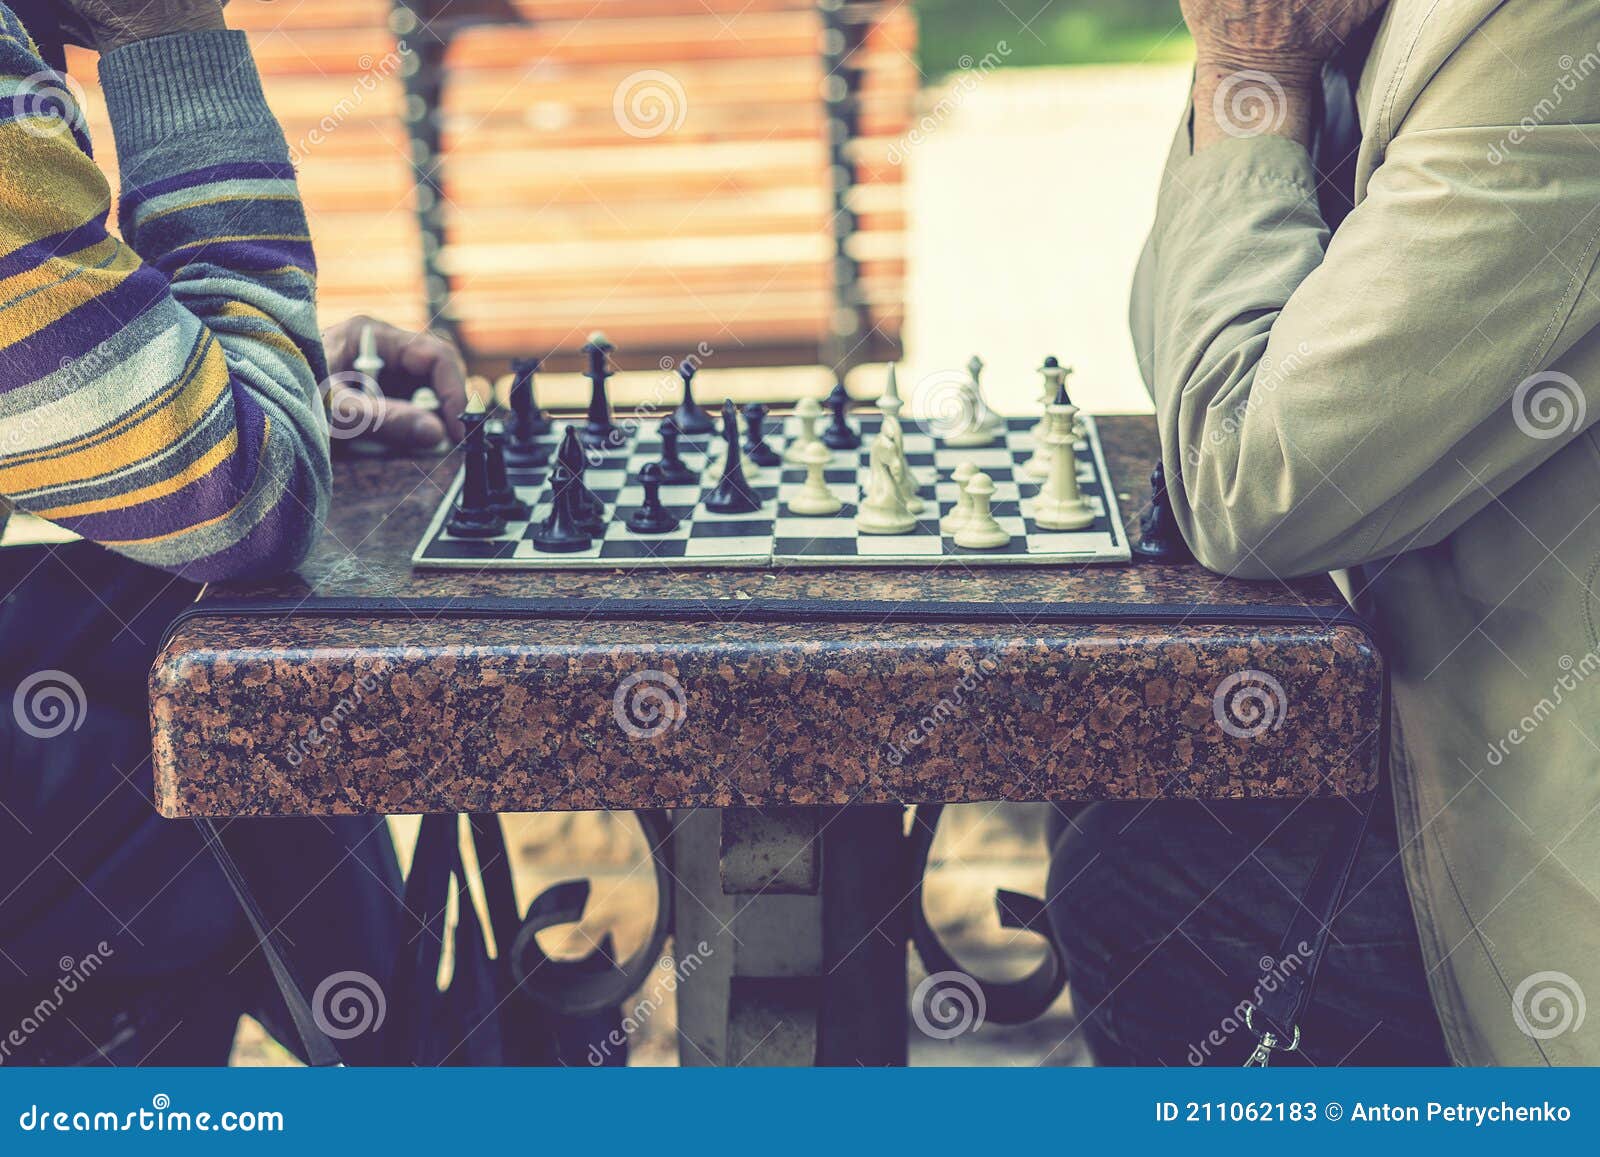 Natureza do xadrez e aposentadoria com amigos mais velhos jogando